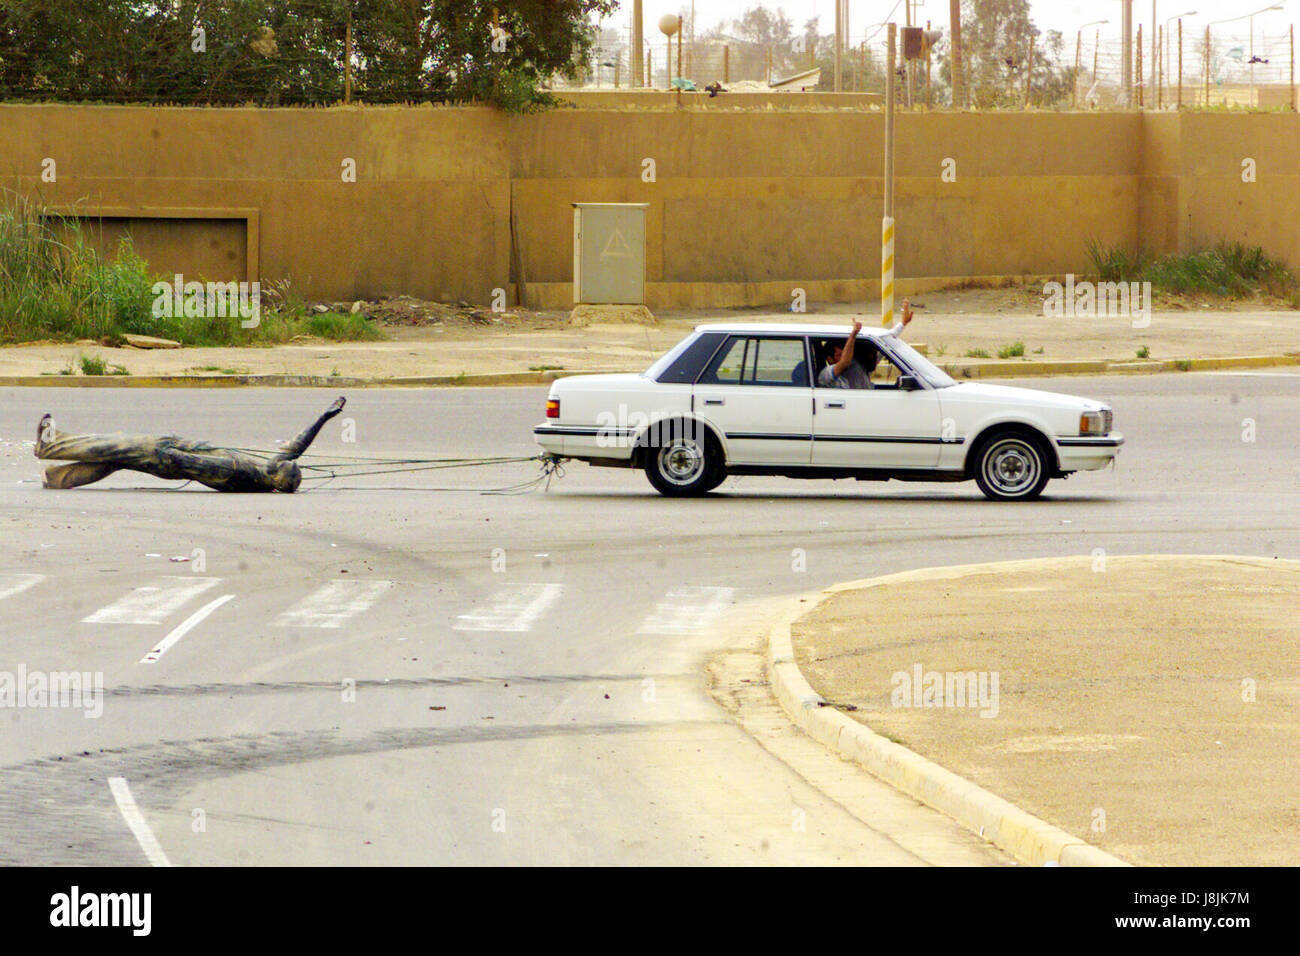 En utilisant une voiture de civils irakiens, faites glisser une statue de Saddam Hussein dans les rues de Bagdad, l'Iraq, au cours de l'opération IRAQI FREEDOM. Banque D'Images